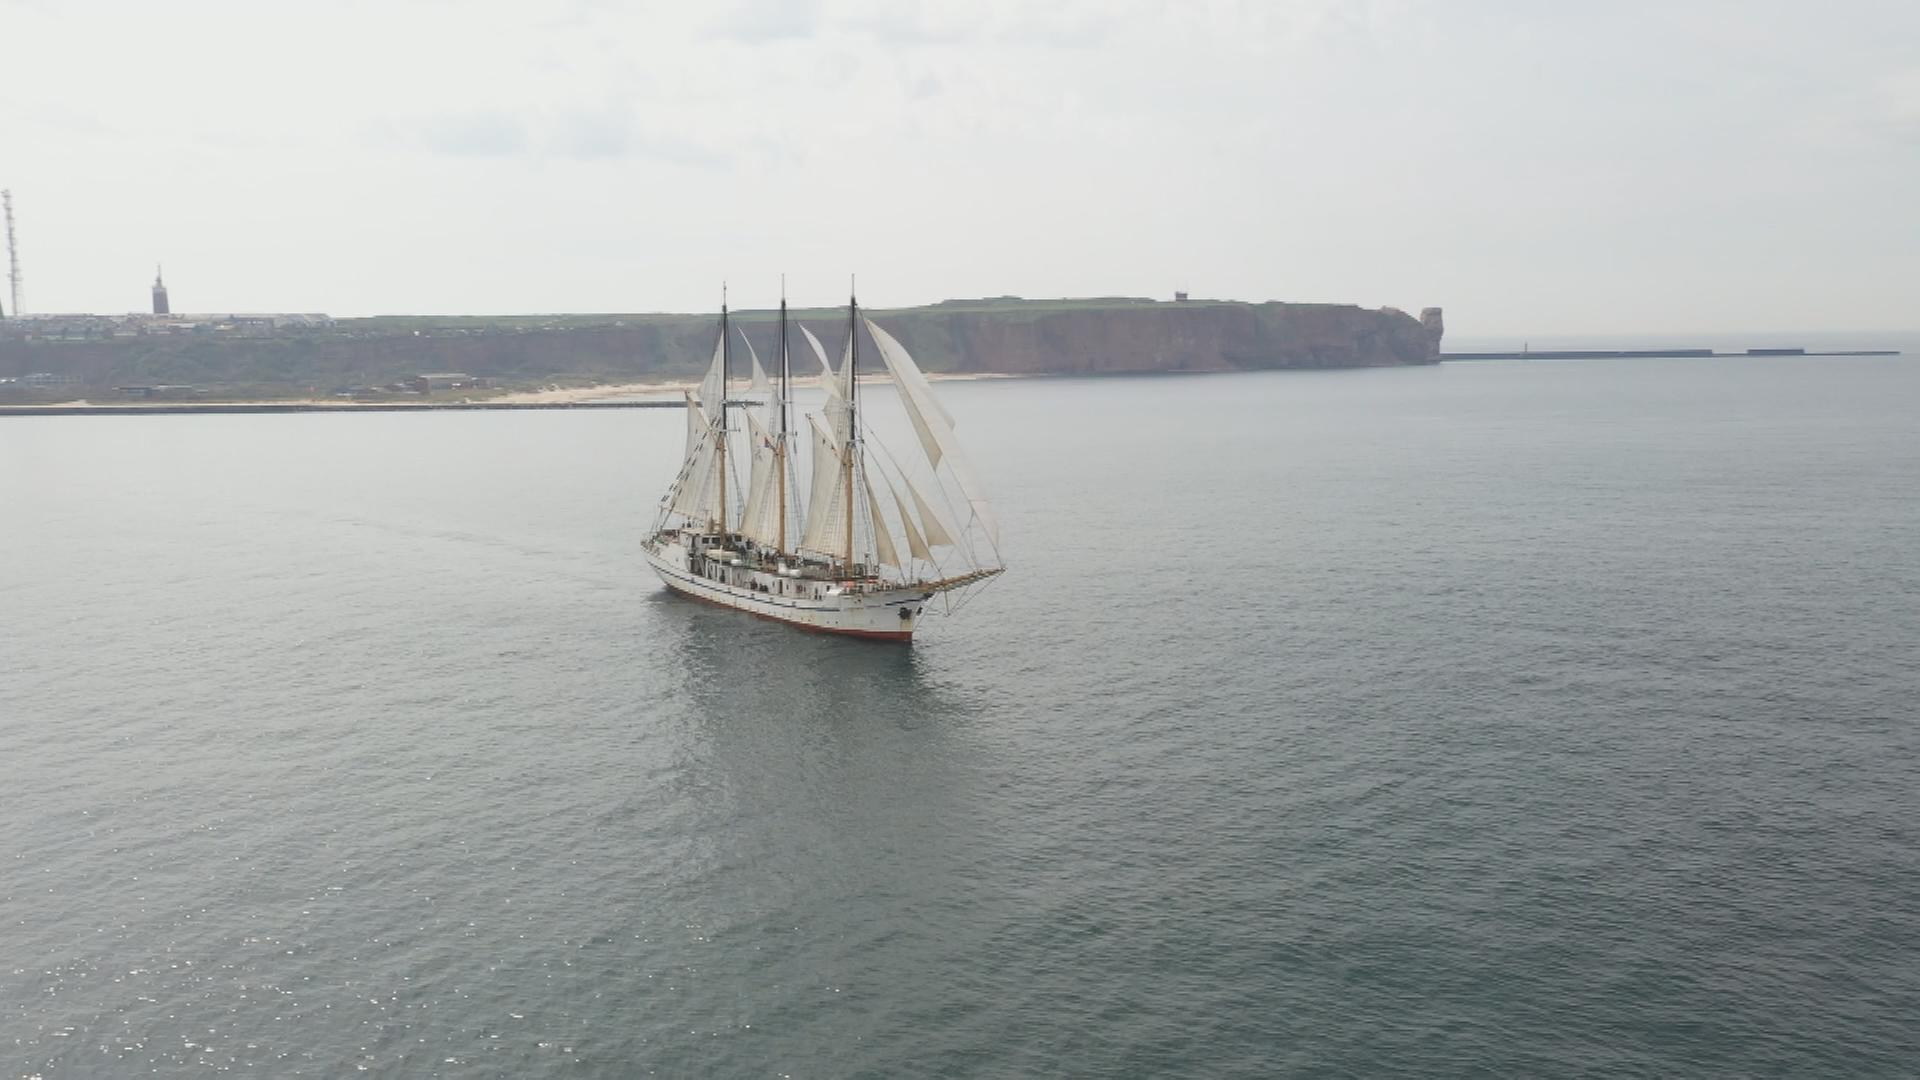 Auf dem Bild ist ein historisches Segelschiff auf dem Meer zu sehen.